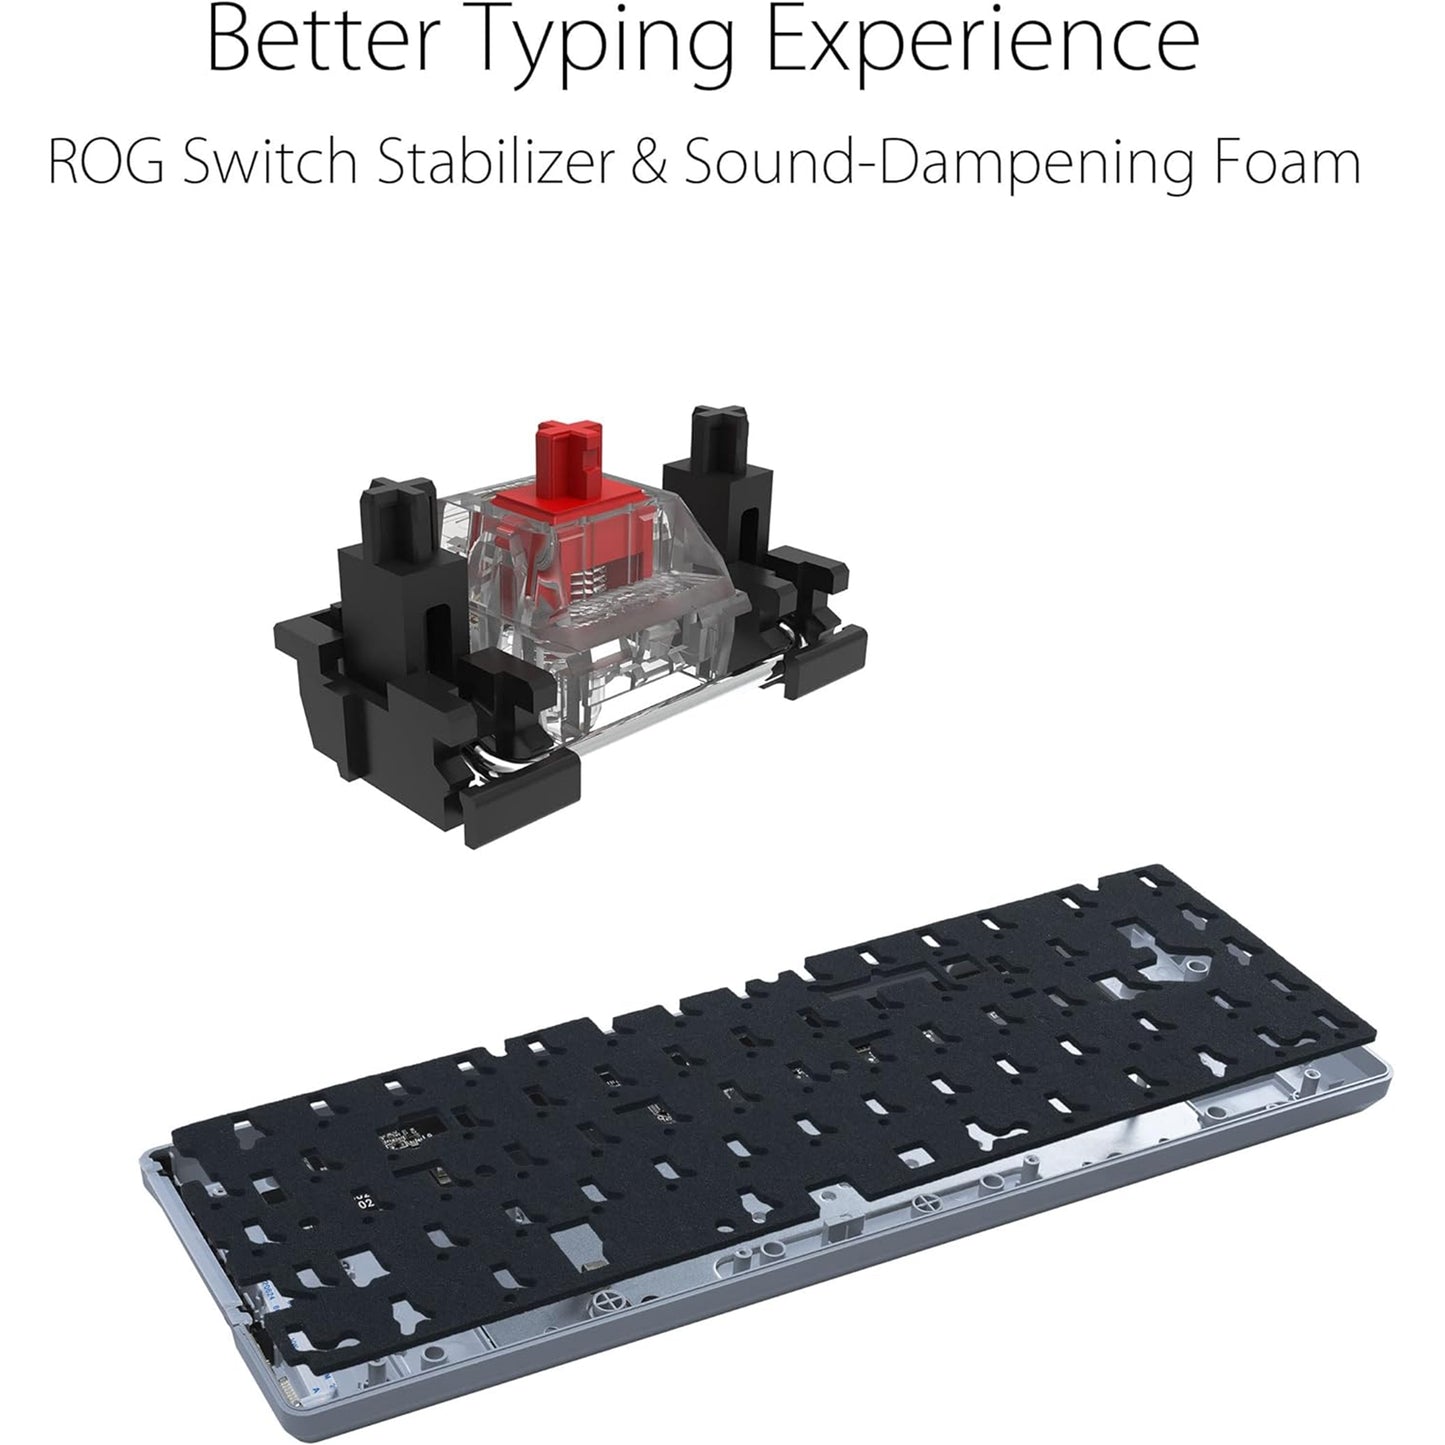 لوحة مفاتيح ميكانيكية مدمجة للألعاب ASUS ROG Falchion Ace 65% RGB، ومفاتيح ROG NX حمراء ومثبتات مفاتيح، وإسفنج مثبط الصوت، وأغطية مفاتيح PBT، سلكية مع KVM، وثلاث زوايا، وغطاء غطاء أبيض 